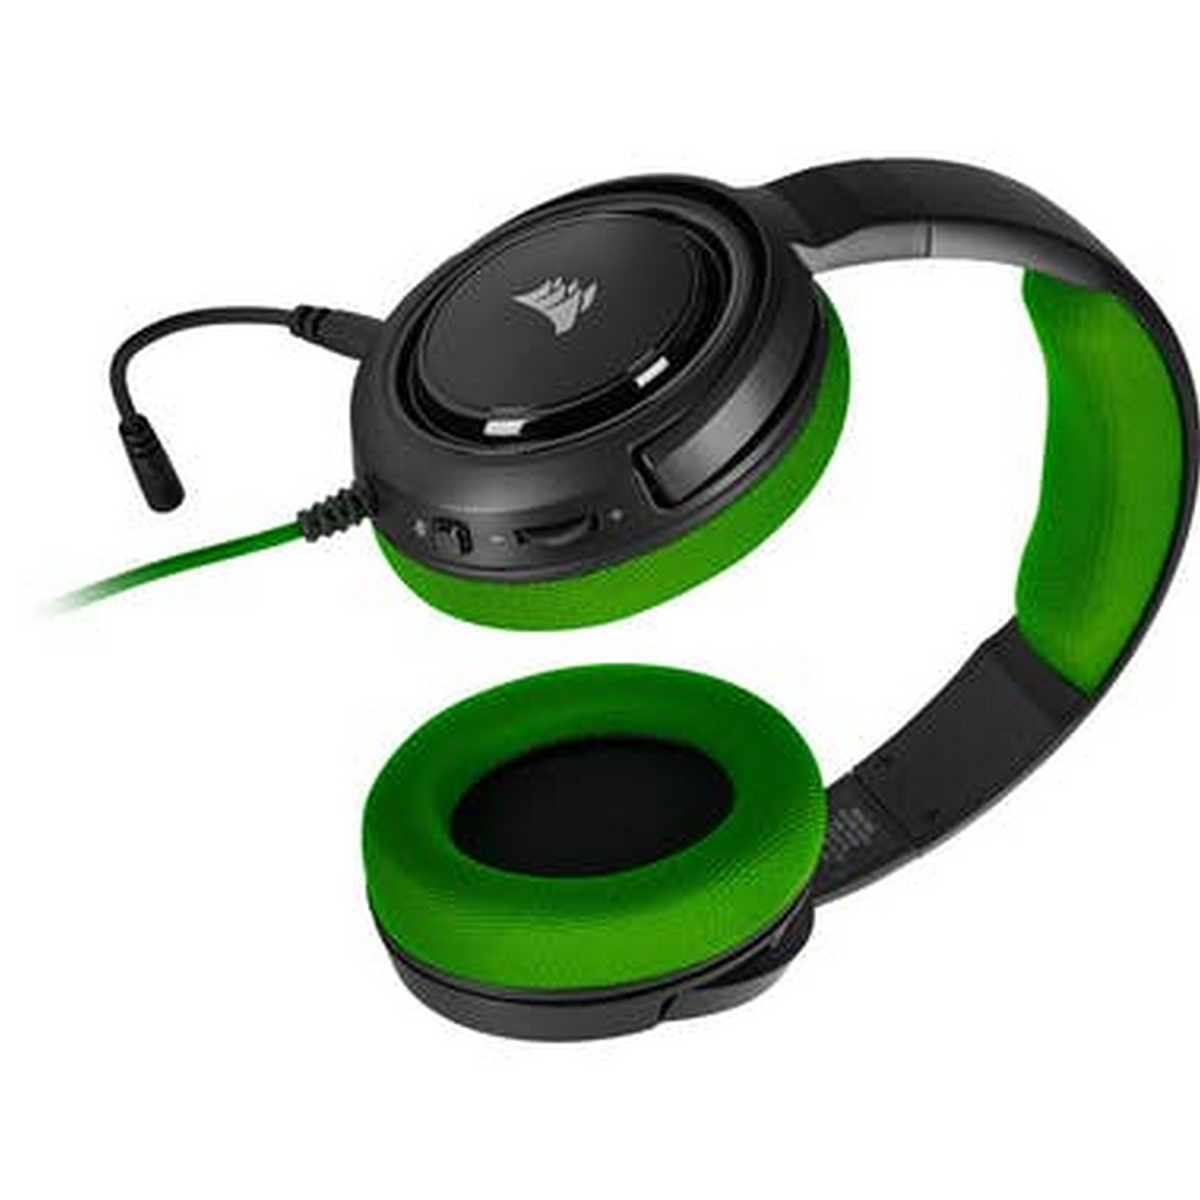 Headset CA-9011197-EU STEREO CORSAIR Gaming GREEN, HEADSET Over-ear Schwarz/Grün HS35